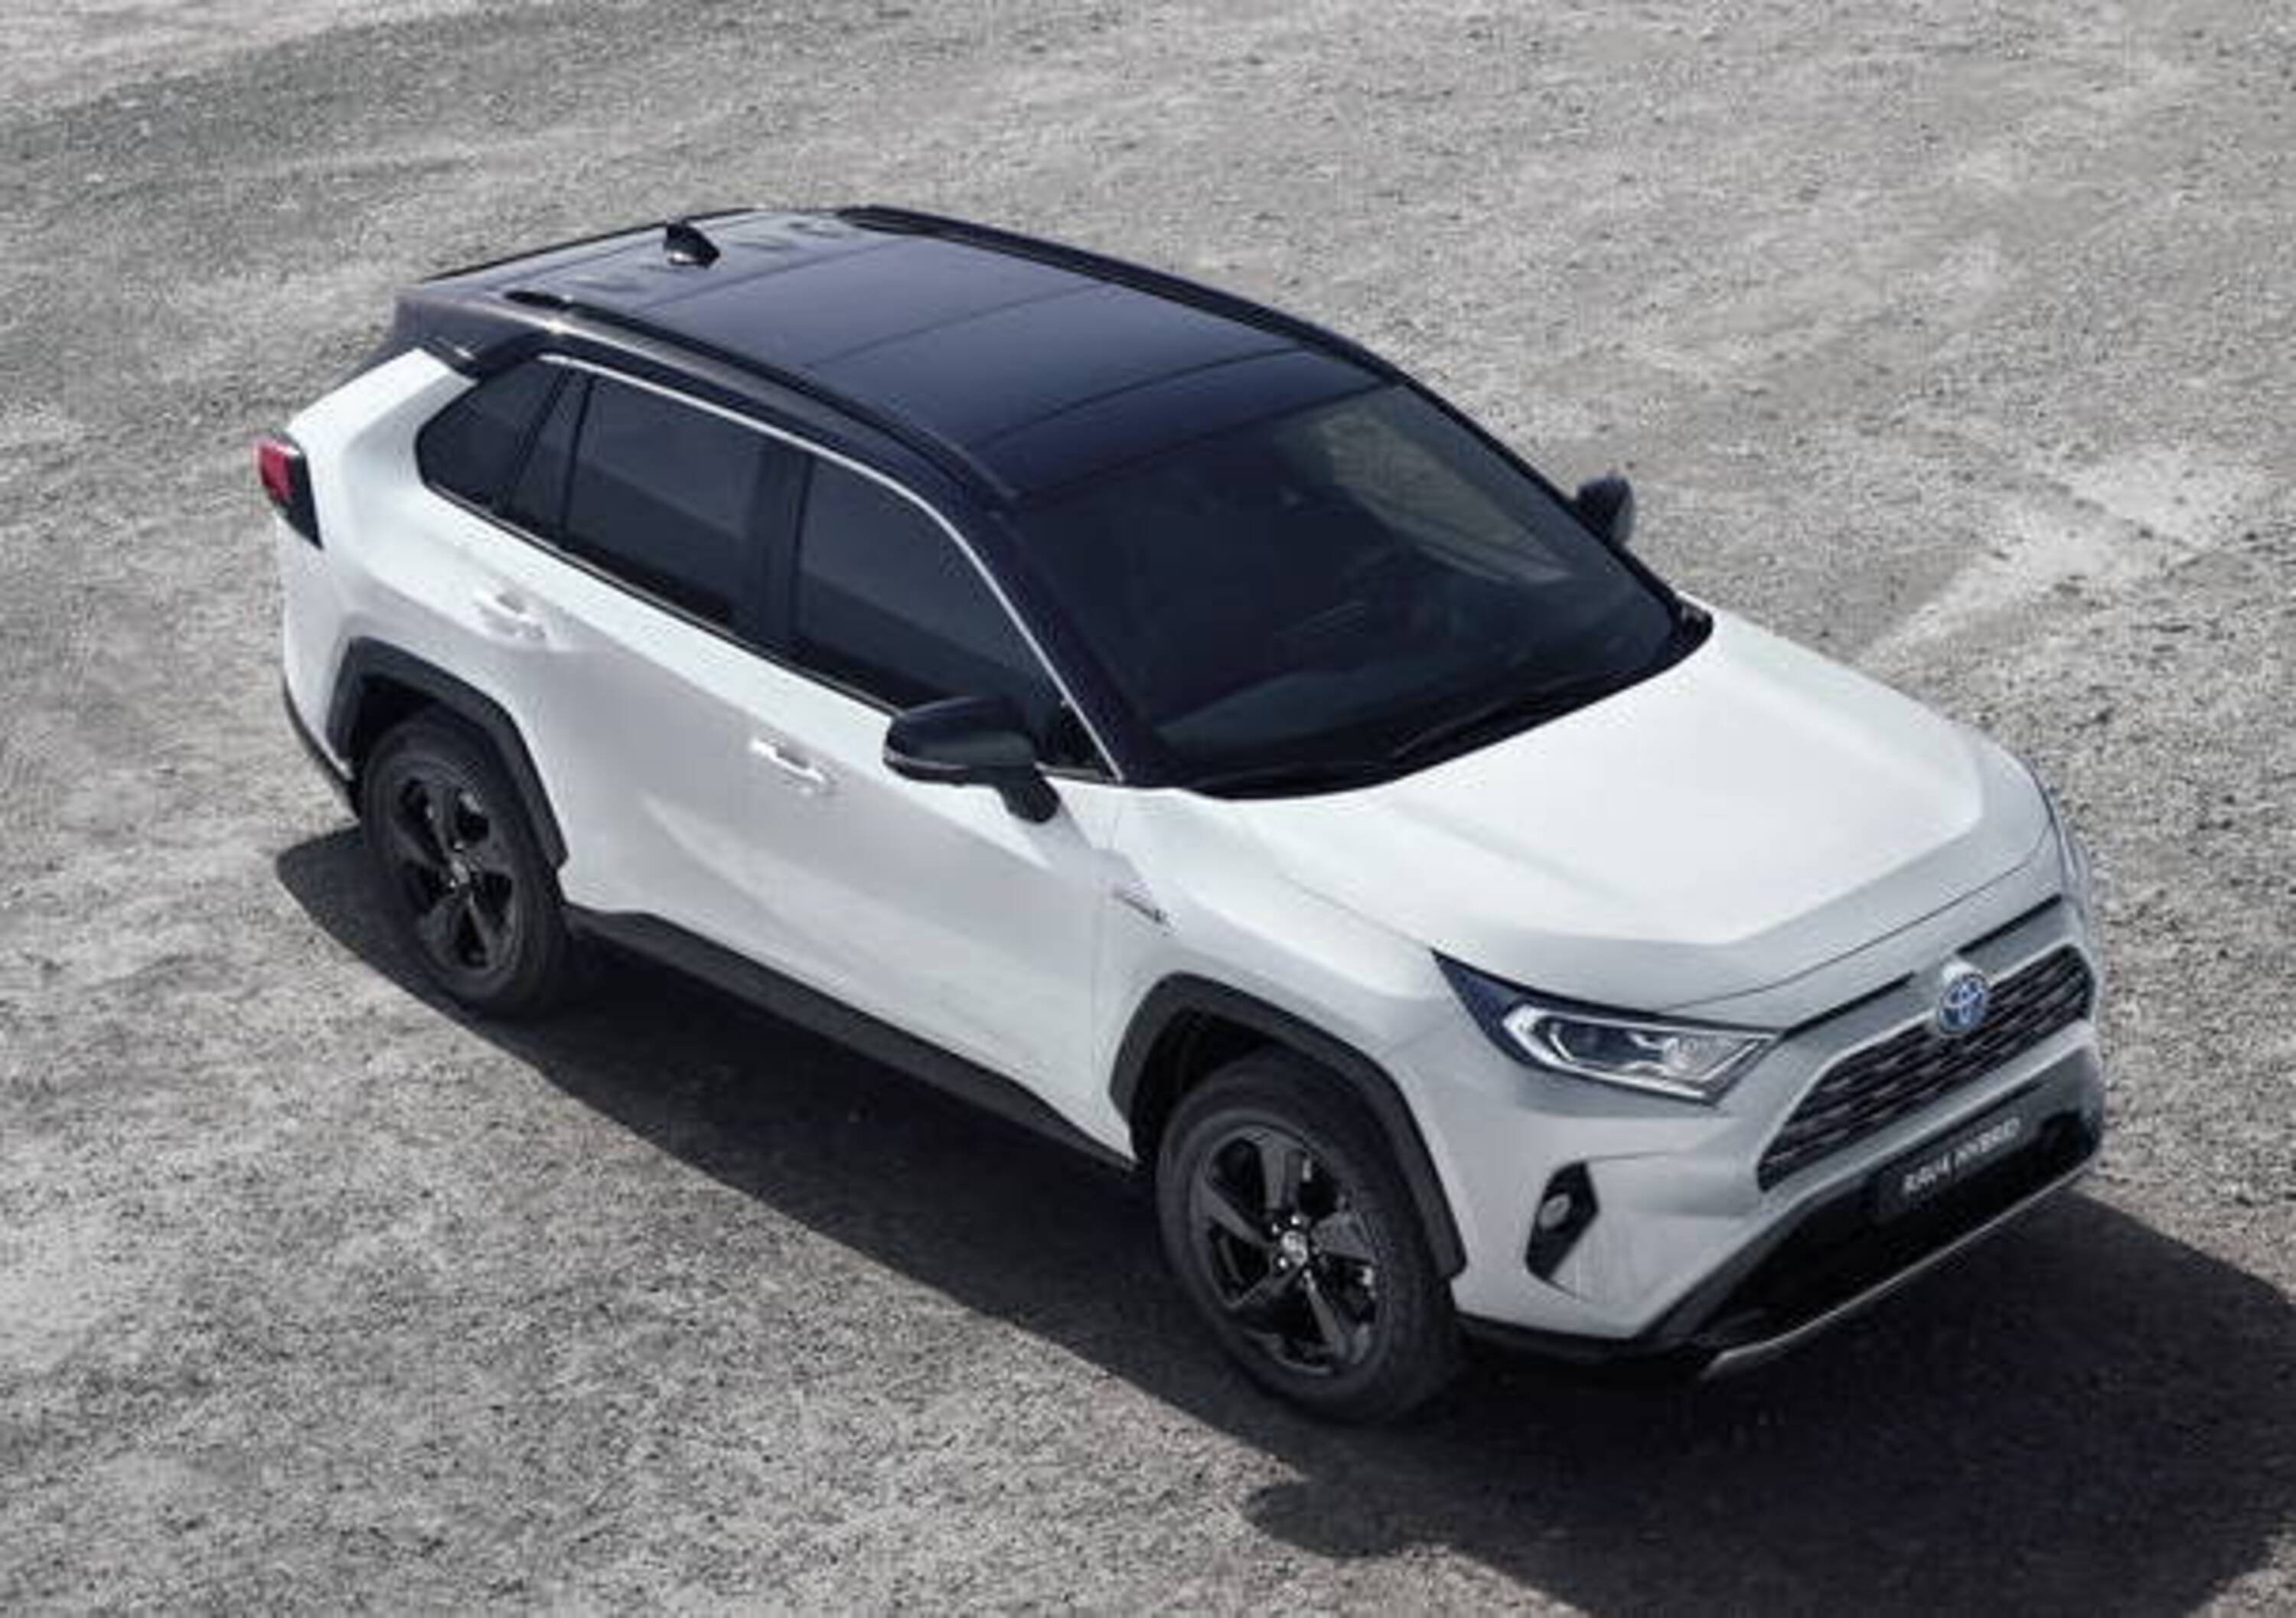 Toyota Rav4 2019, niente diesel solo ibrido. Ecco i prezzi